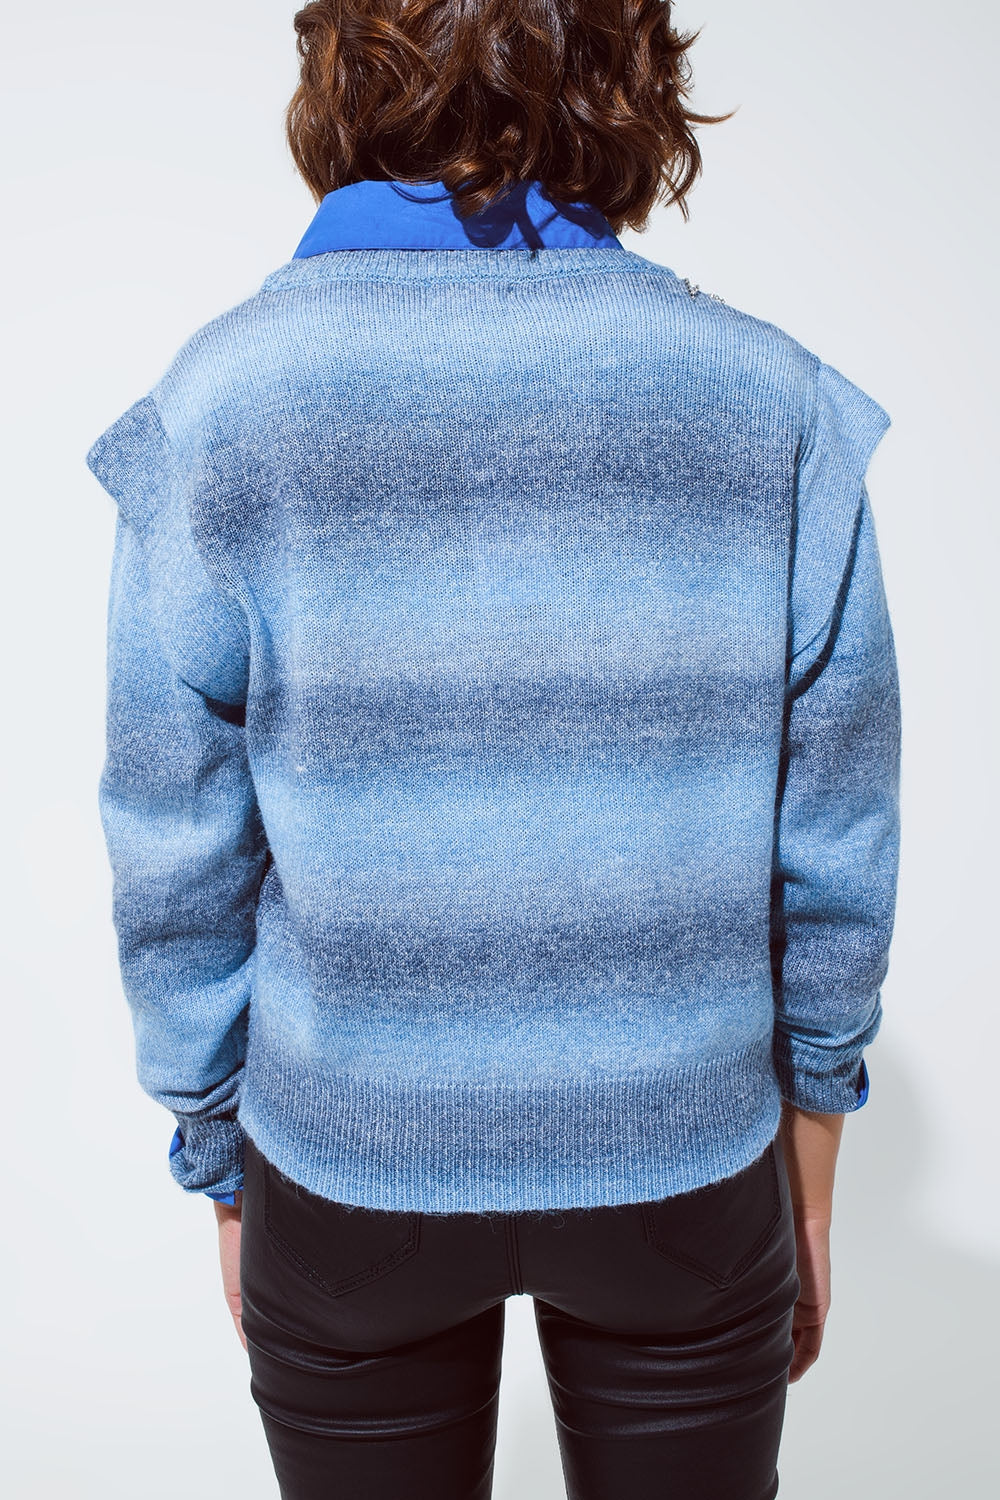 Maglione blu dal design ombreggiato con scollo rotondo e dettagli delle maniche